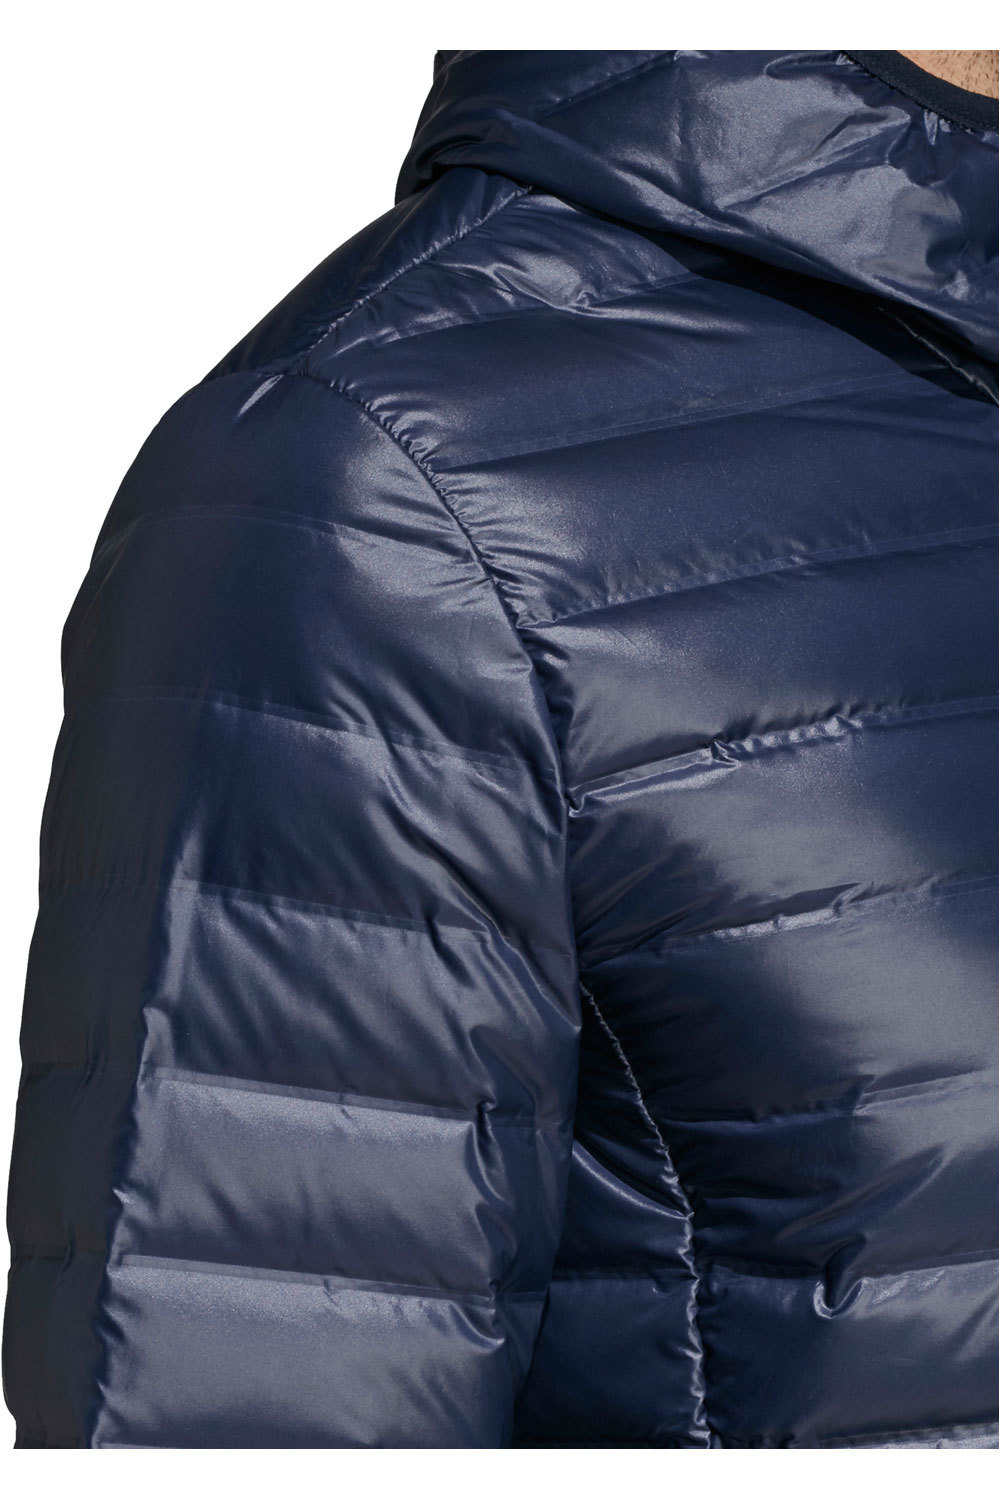 adidas chaqueta outdoor hombre Varilite Down con capucha 04